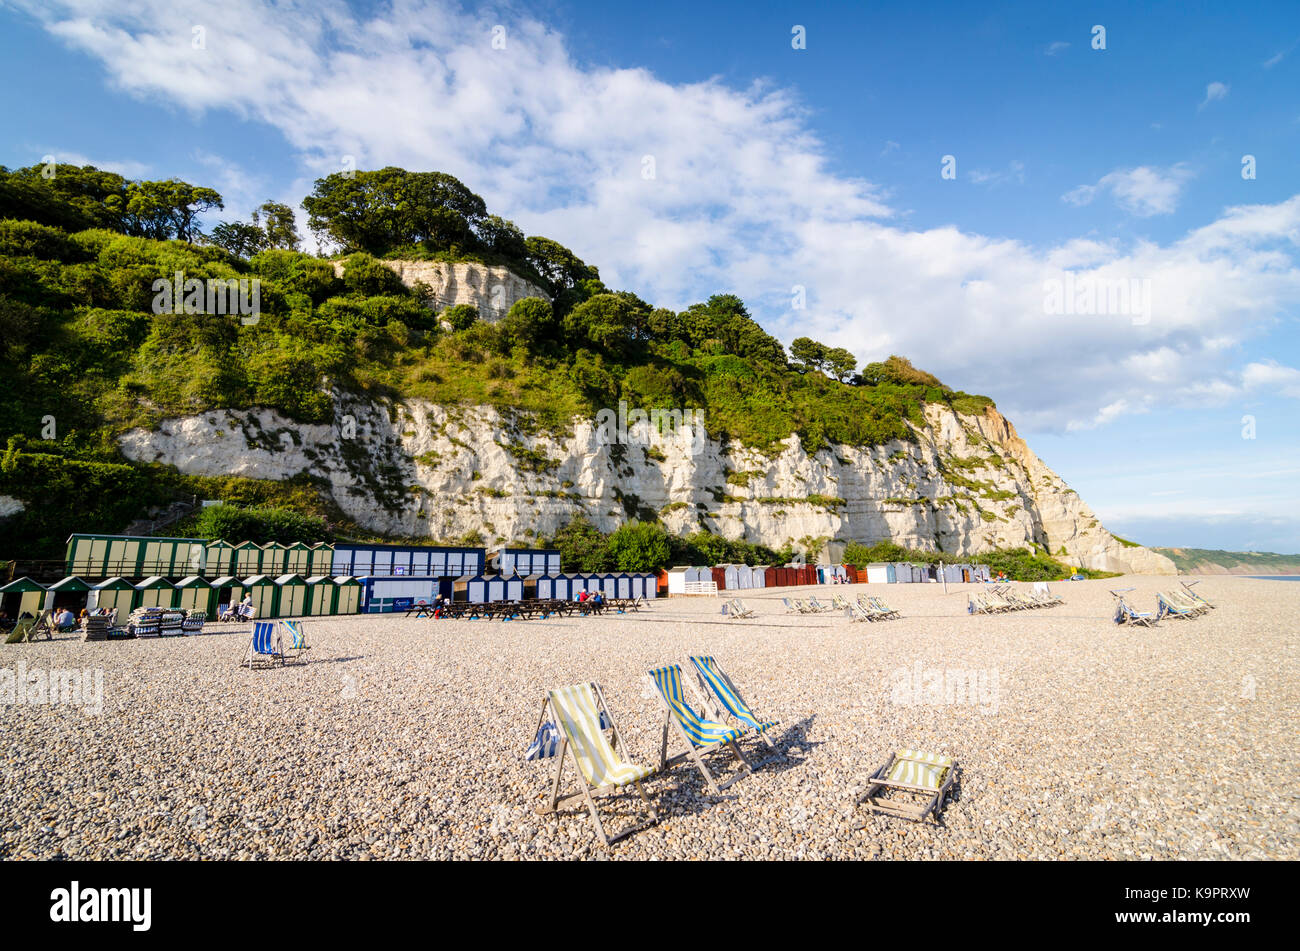 Sedie a sdraio sulla spiaggia di birra, Inglese Mare città costiera, East Devon Coast, England, Regno Unito Foto Stock